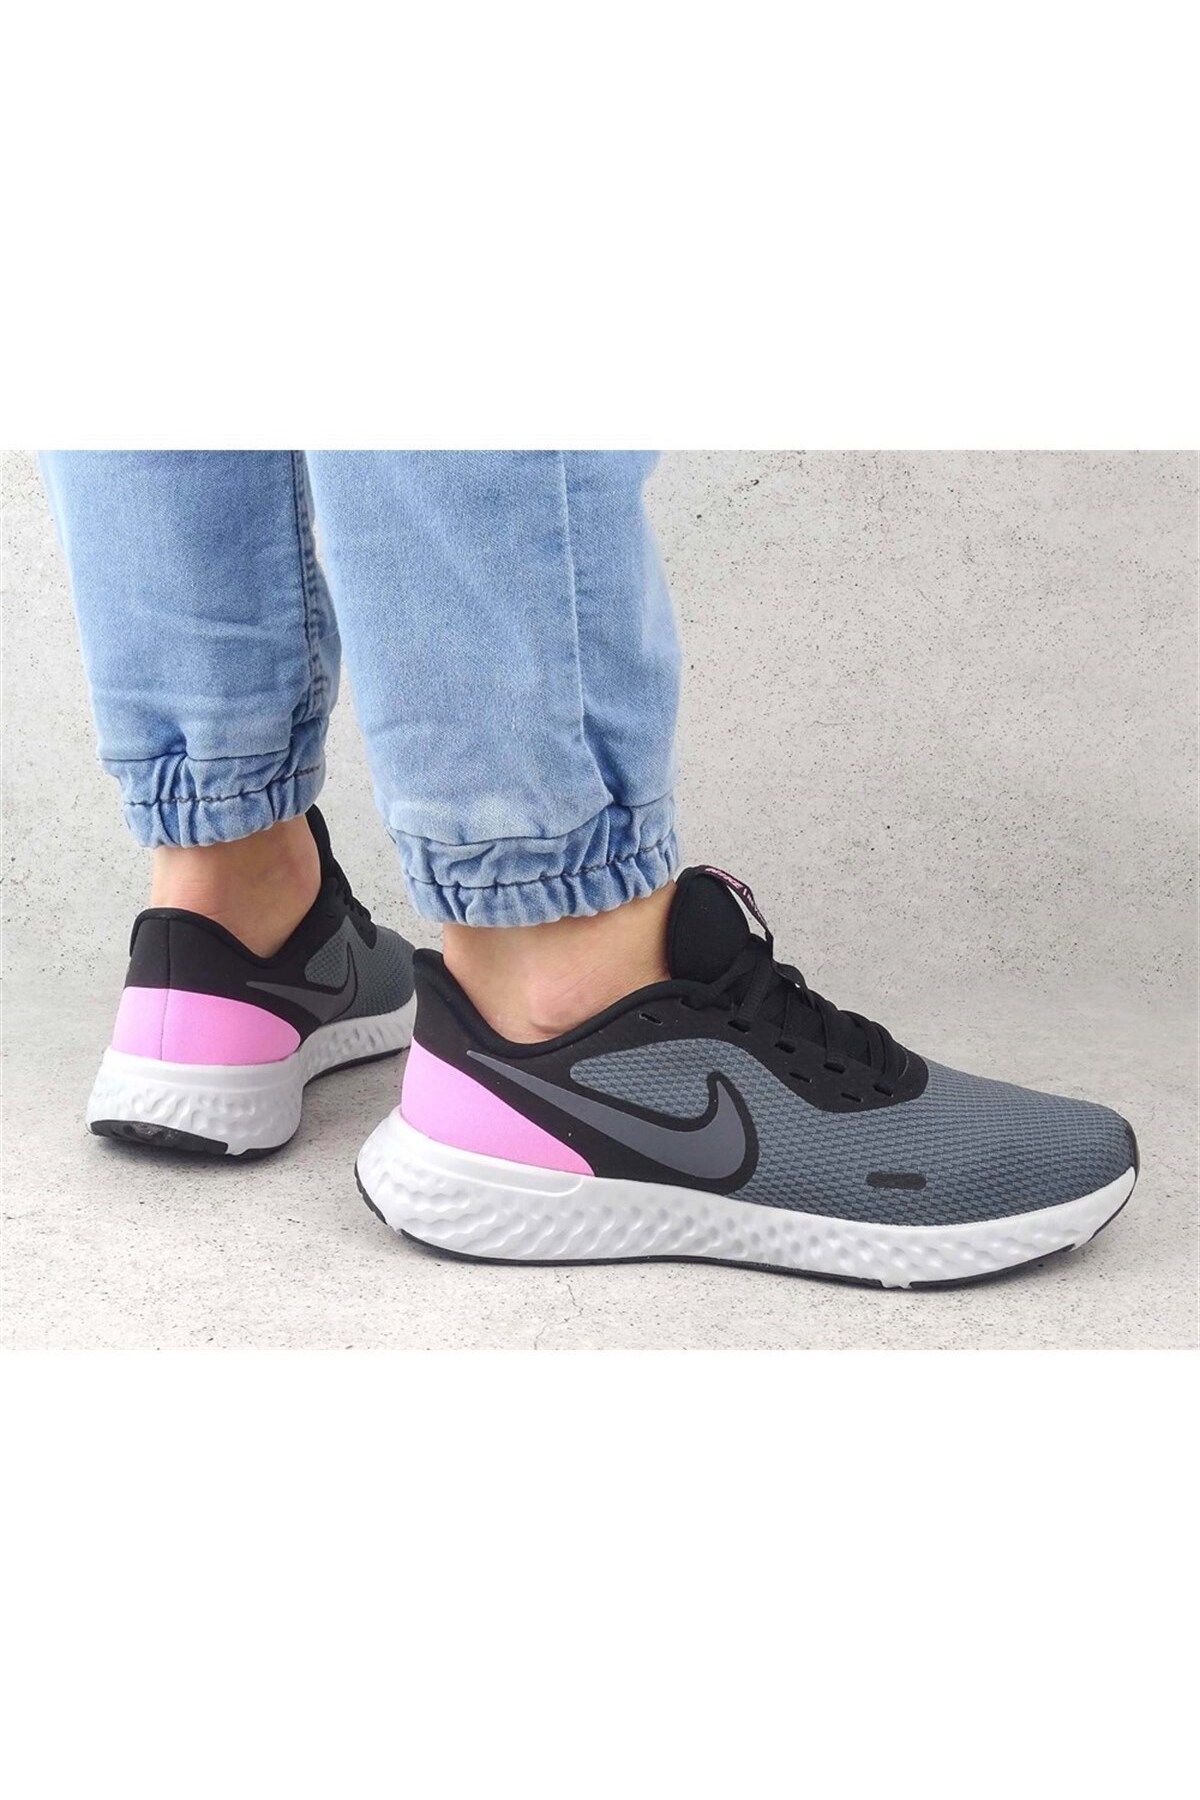 Nike Wmns Revolution 5 Kadın Koşu Ayakkabısı Bq3207-004